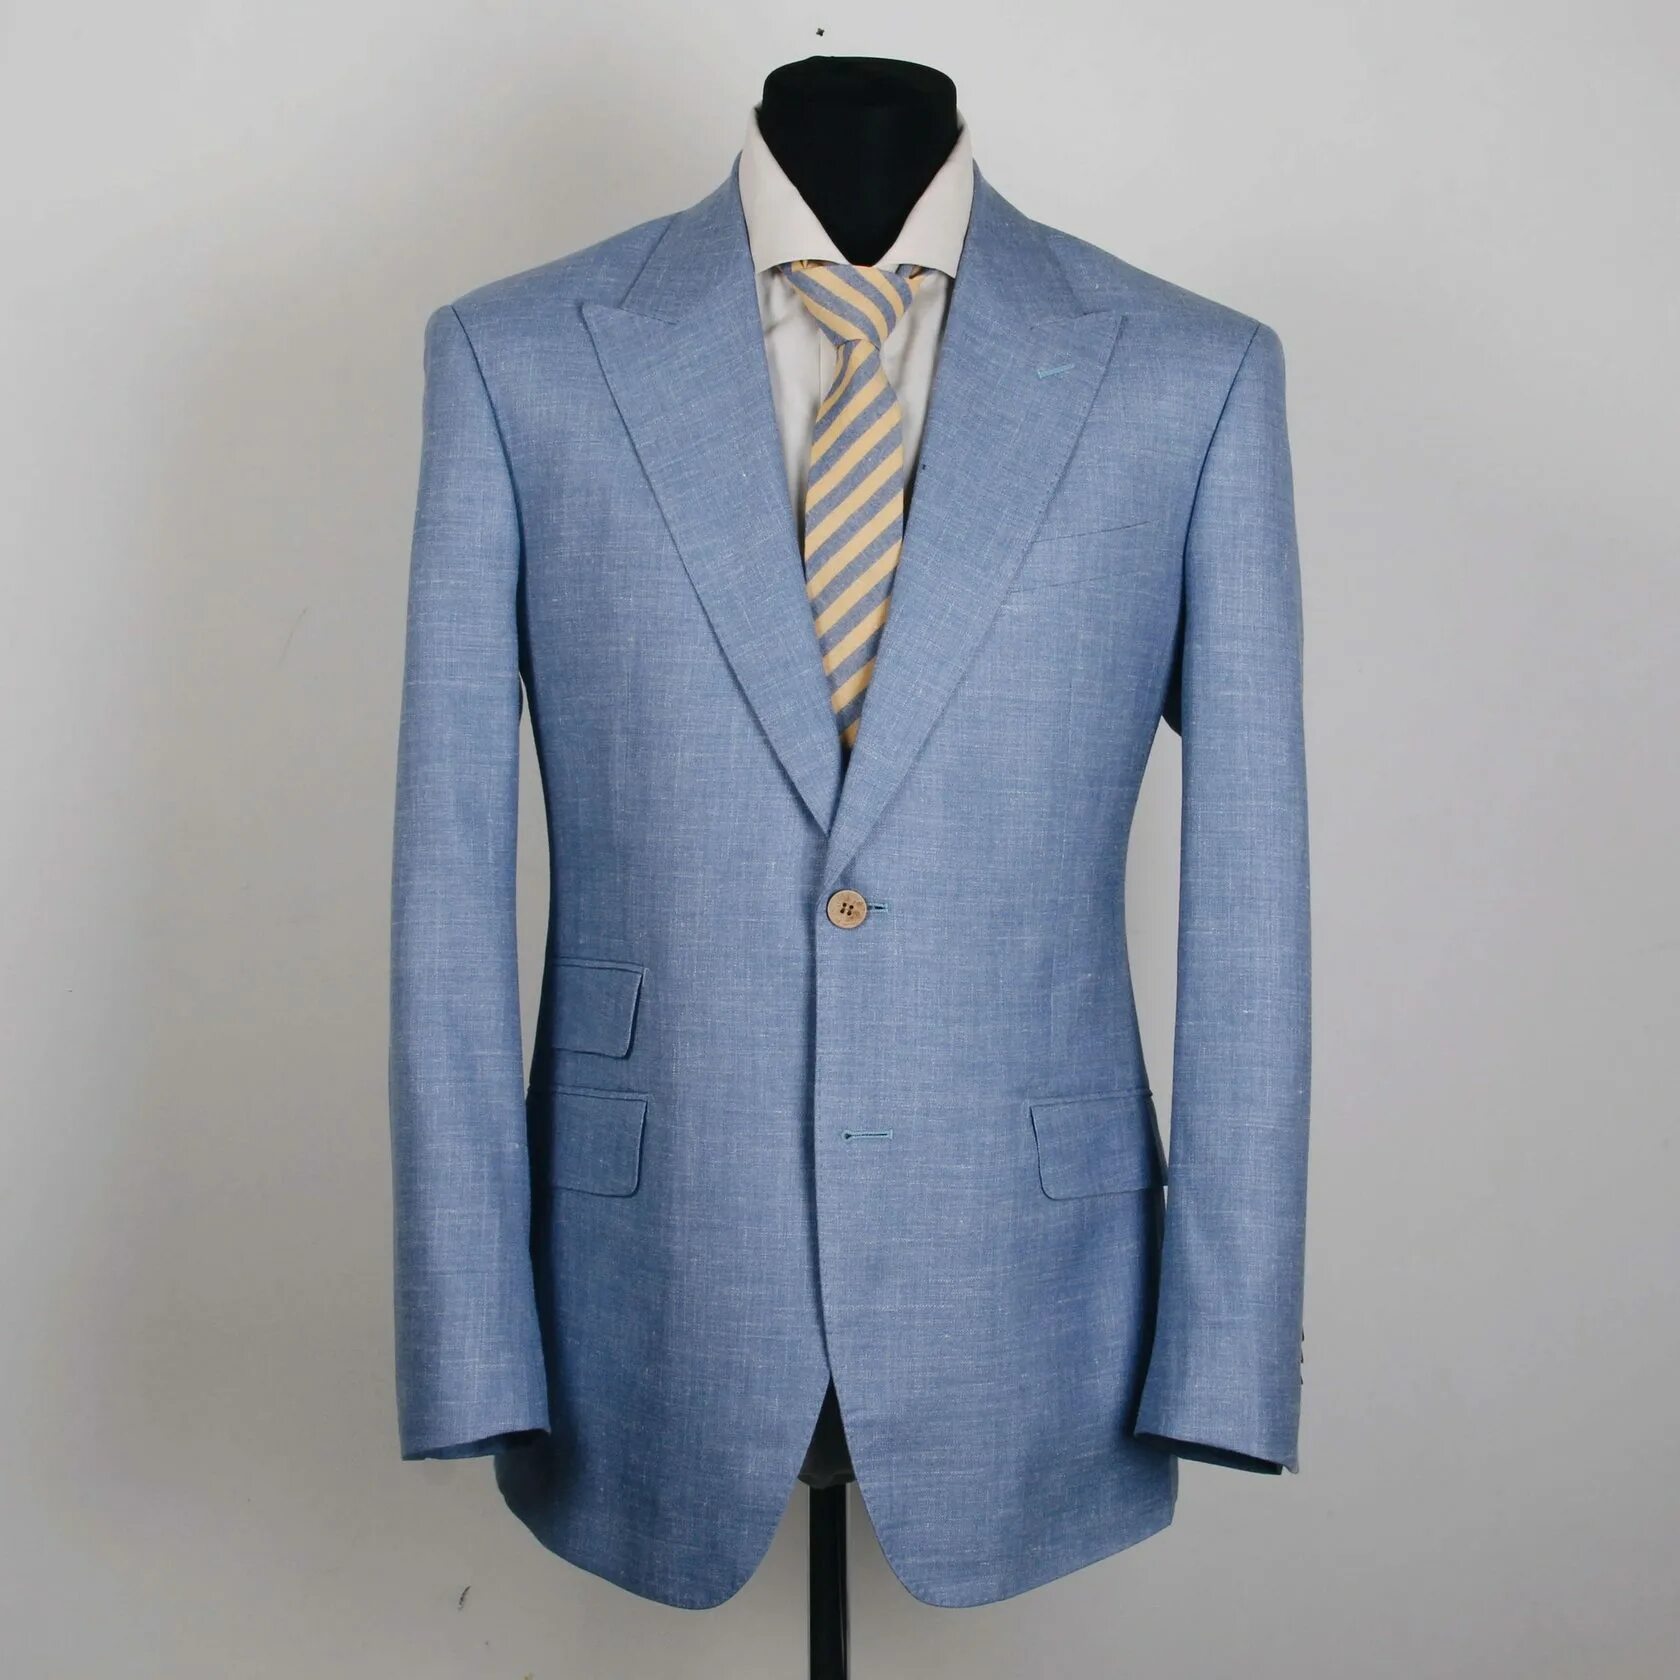 Купить мужской костюм лен. Vitale Barberis Canonico пиджак. Костюм Cantarelli. Пуговицы для голубого пиджака. Светло голубой пиджак мужской.